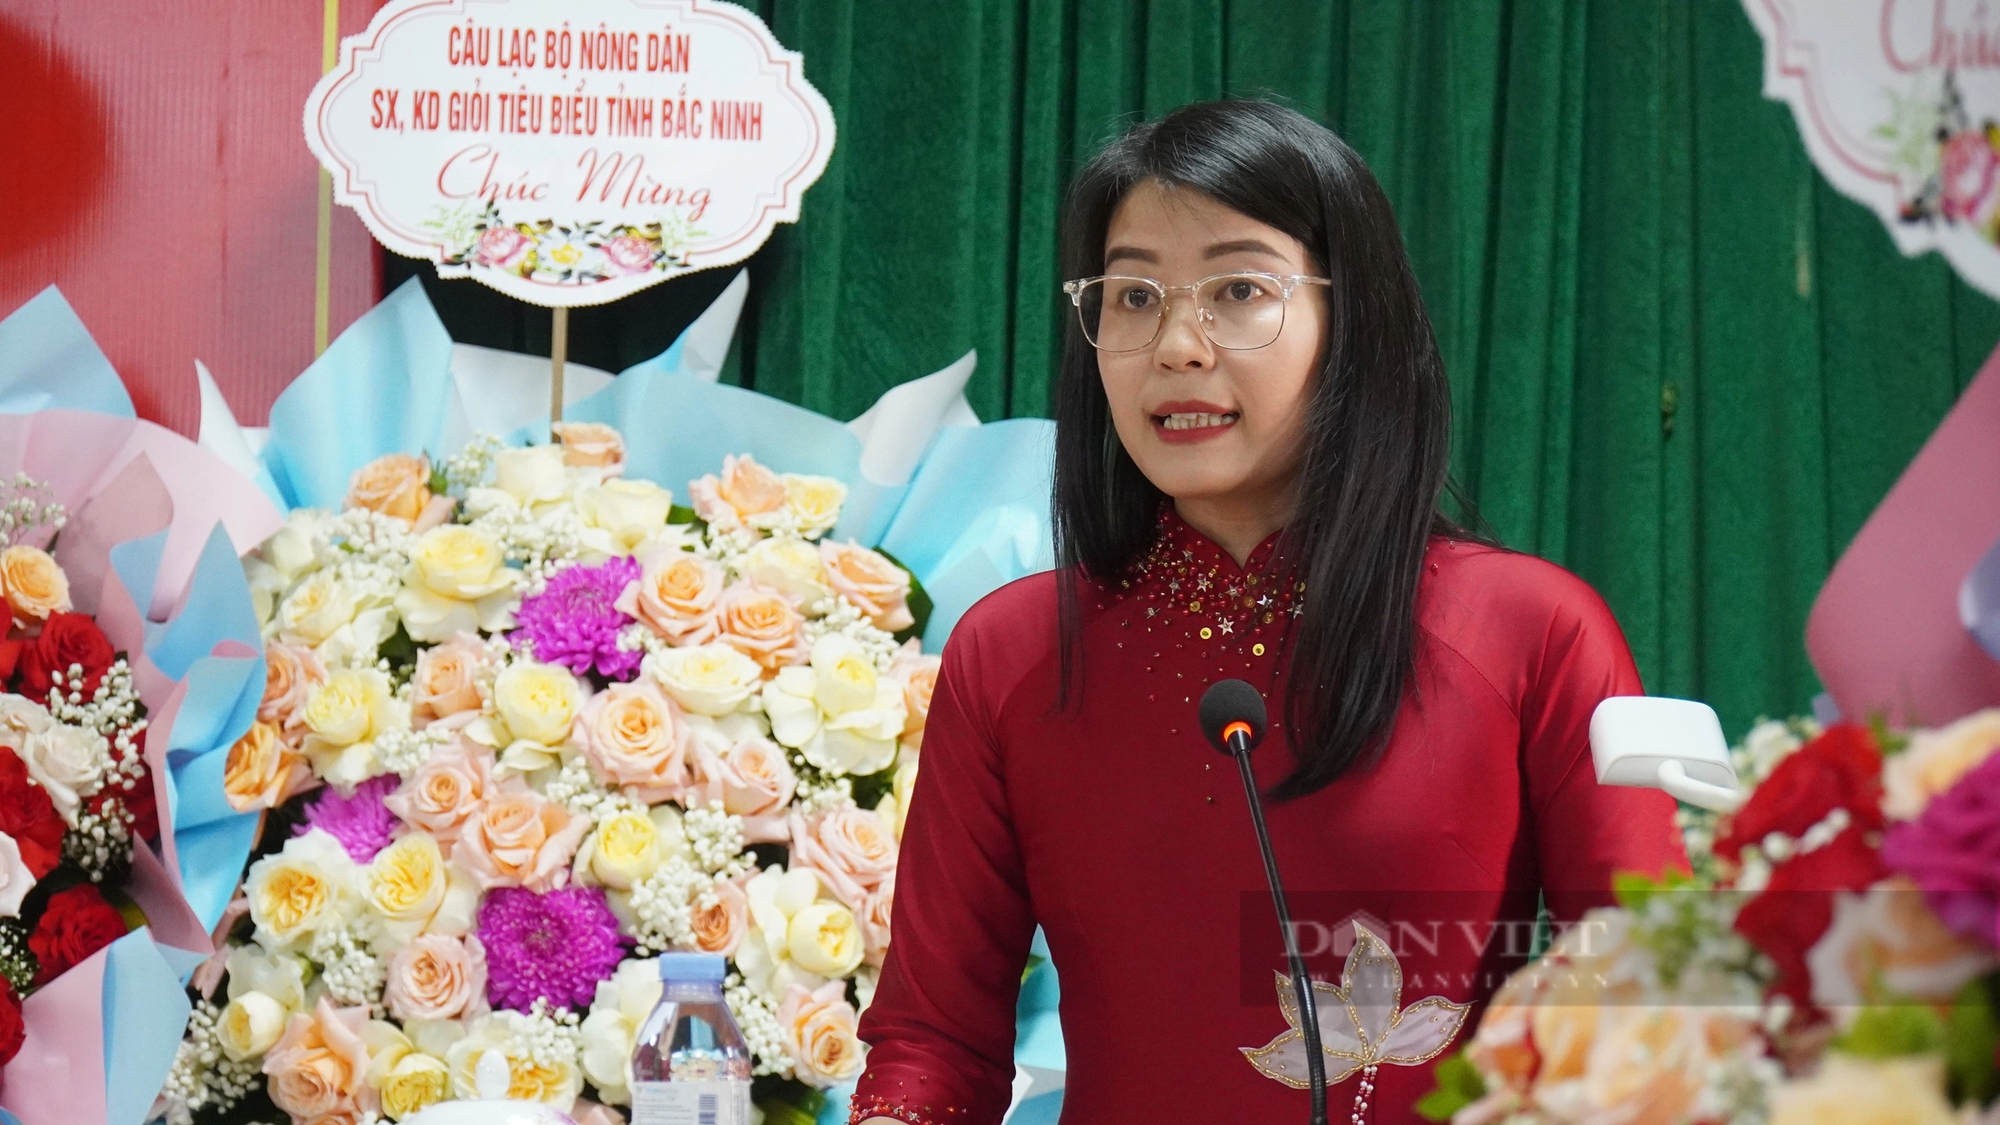 Bắc Ninh ra mắt Câu lạc bộ sản xuất kinh doanh giỏi tiêu biểu huyện Lương Tài- Ảnh 5.